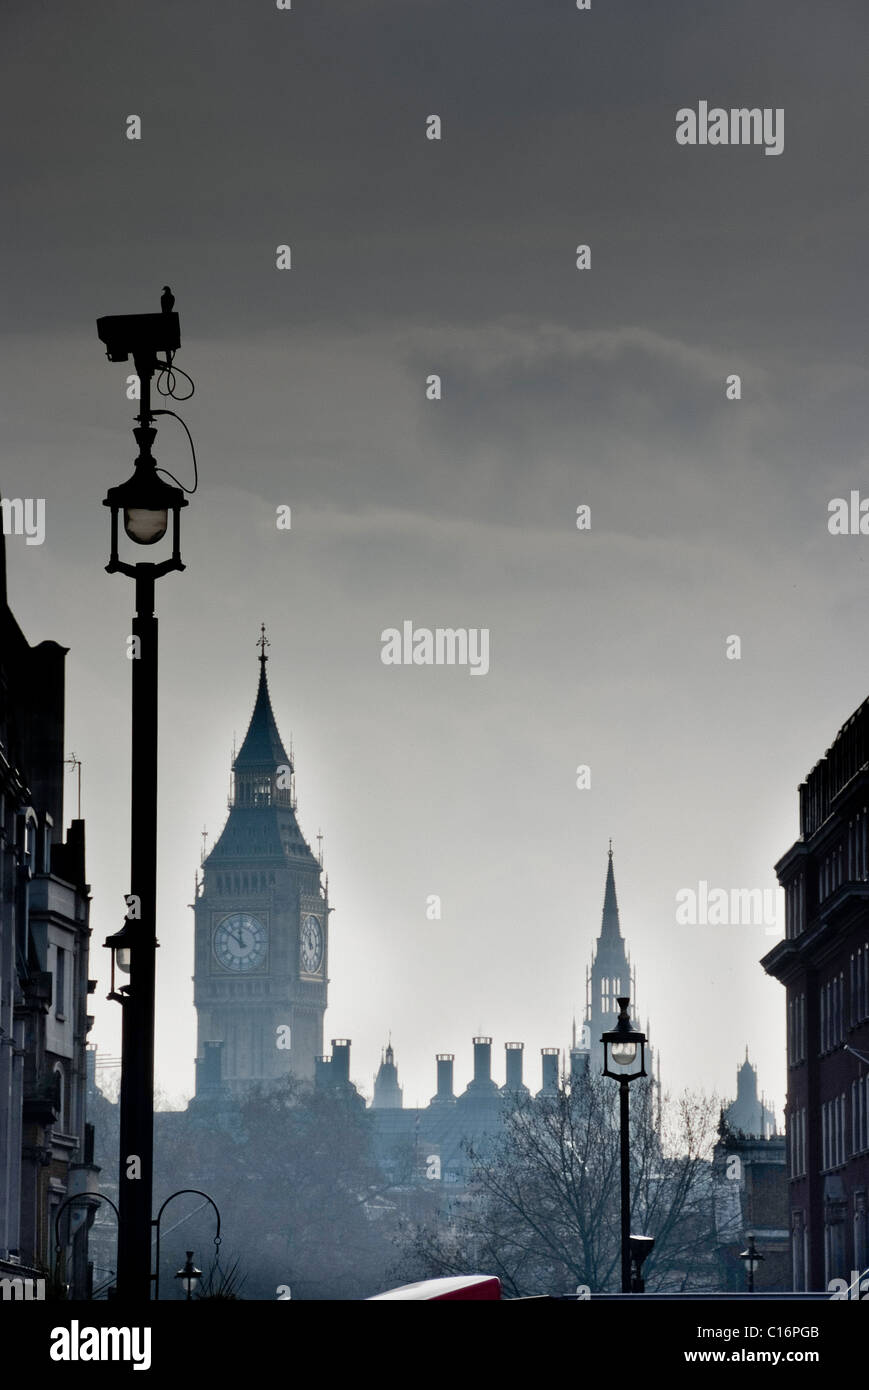 Lo skyline di Londra con il Big Ben sullo sfondo e una videocamera di sicurezza in primo piano Foto Stock